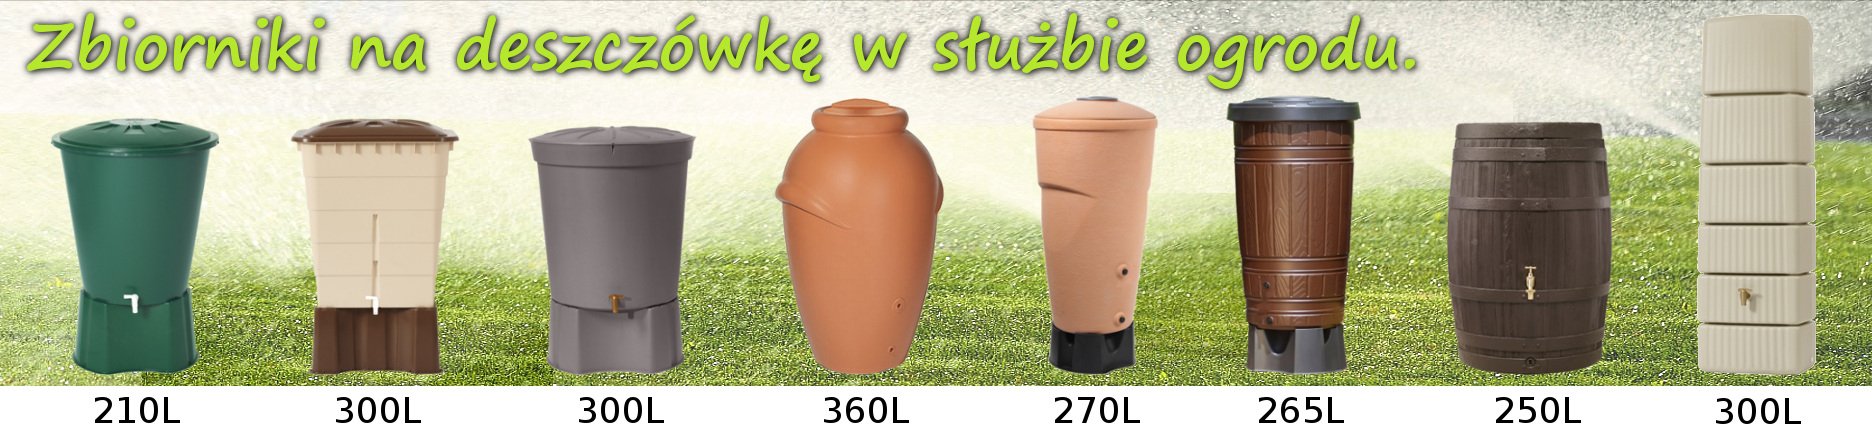 http://www.nabudowe24.pl/zbiorniki-na-wode-deszczowke-naziemne,568.html